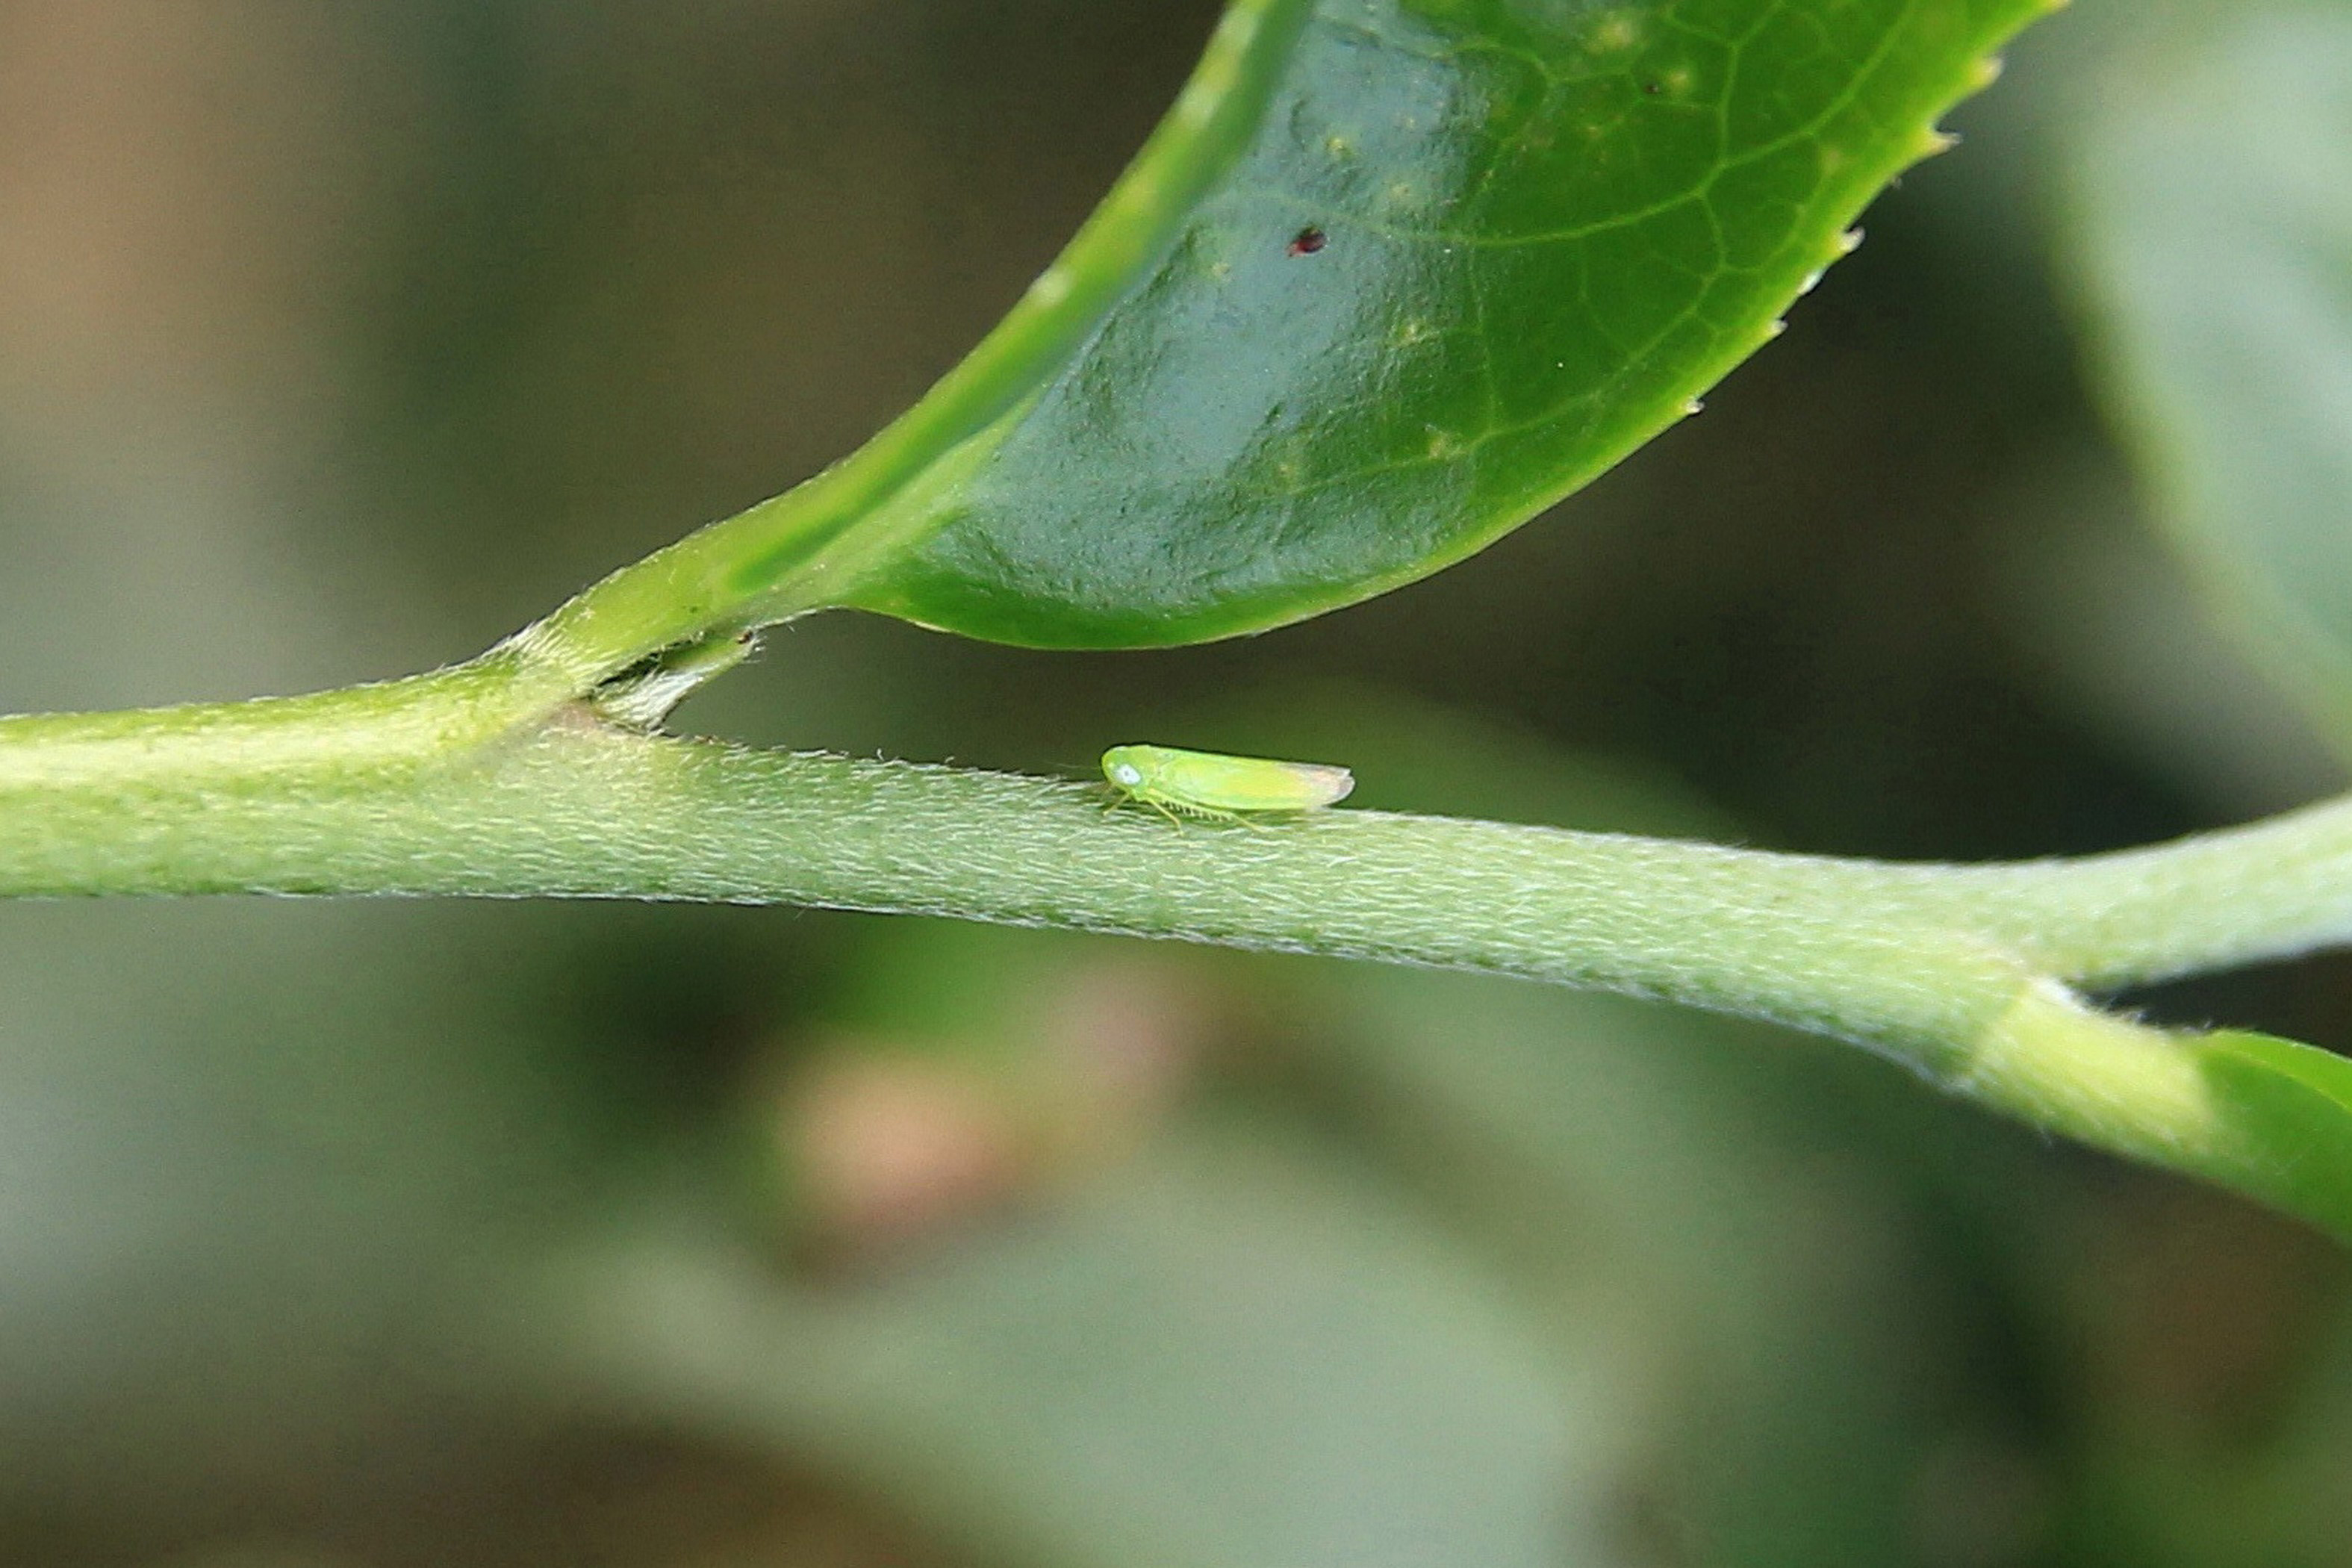 茶小绿叶蝉的口器会产生水状唾液,协助吸取茶叶维管束组织中的